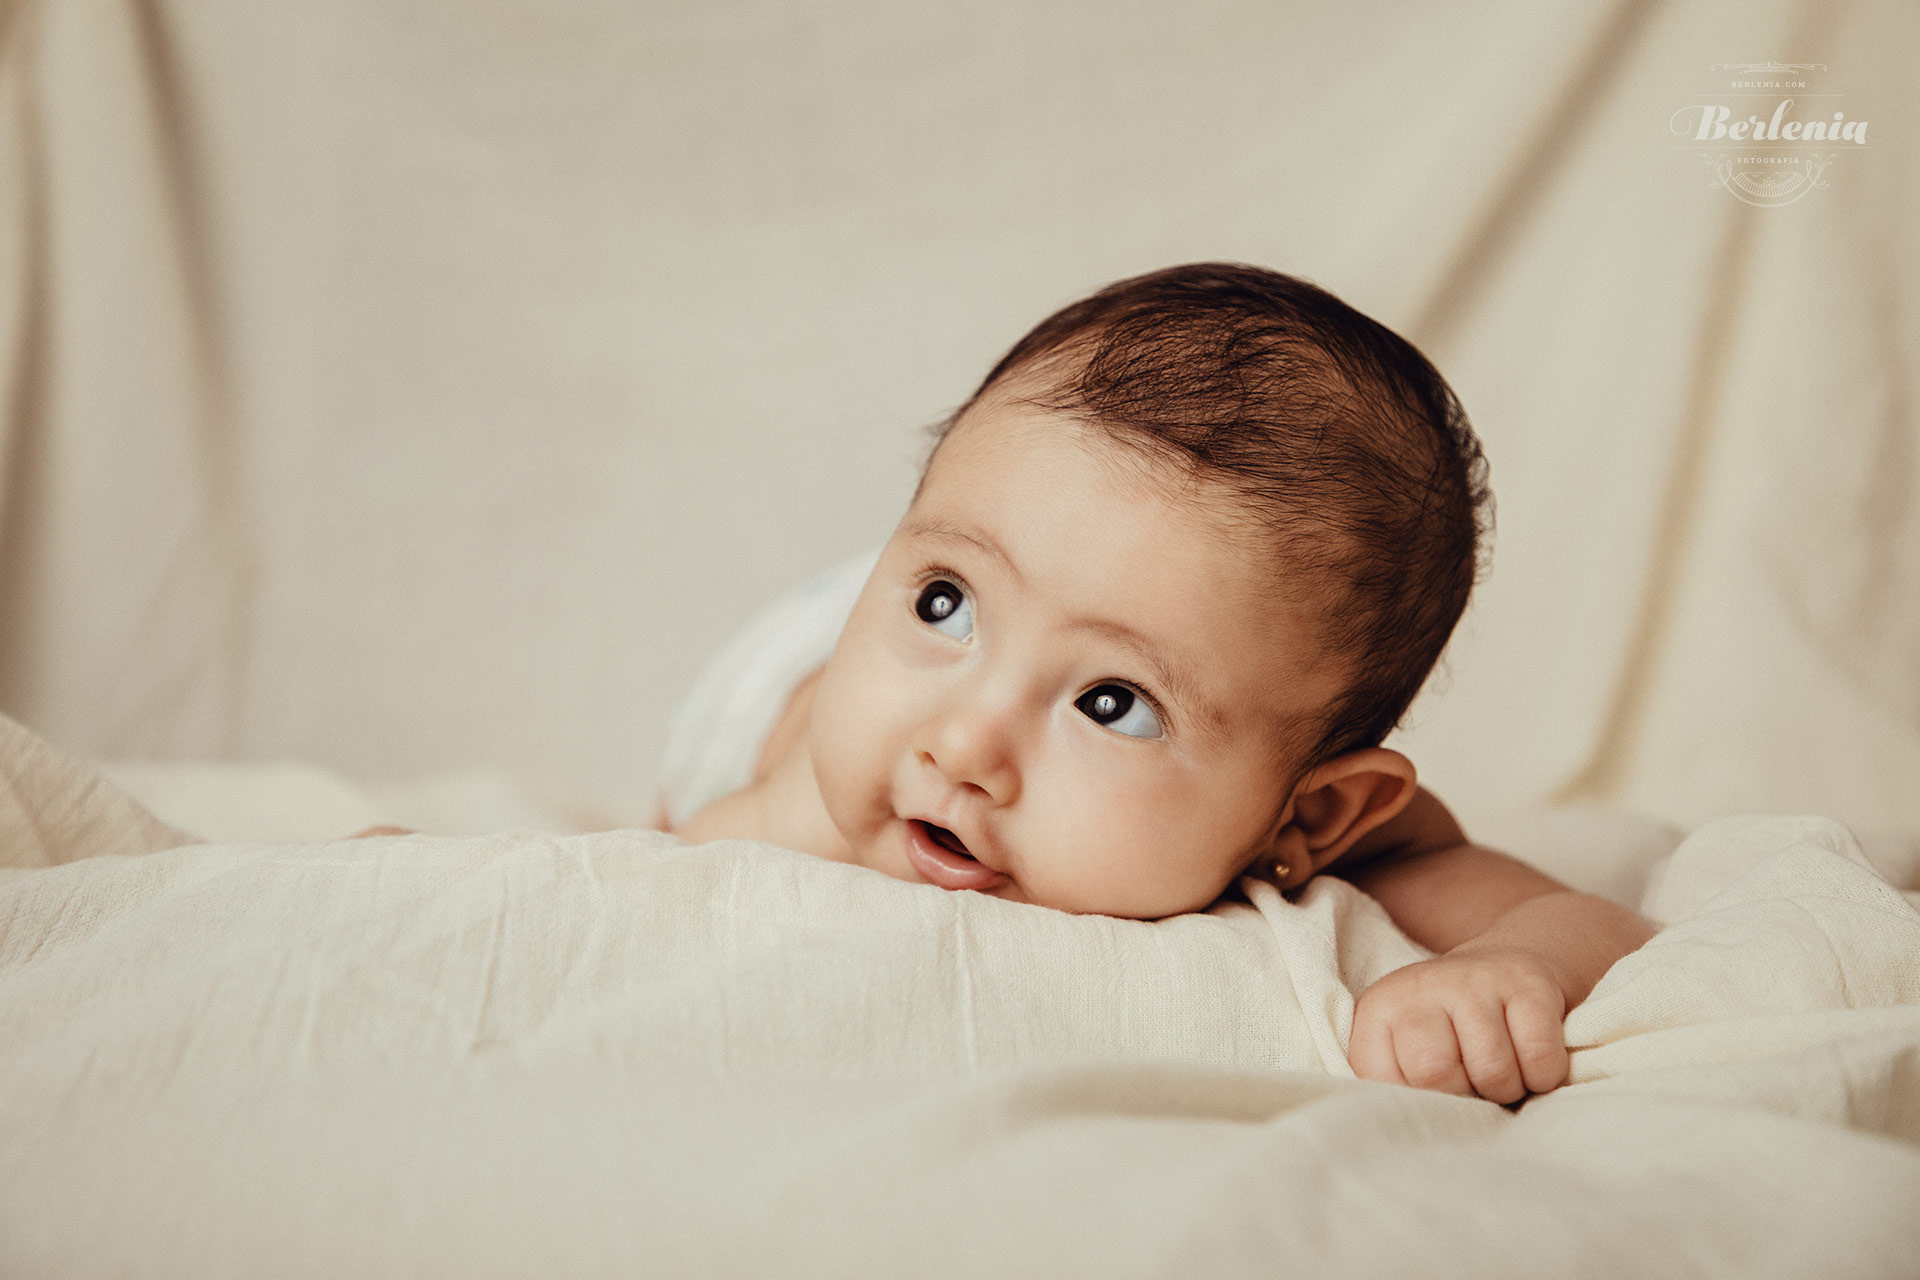 Fotografía de bebé de 3 meses - Sesión de fotos en estudio - Villa Urquiza, CABA, Buenos Aires, Argentina - Berlenia Fotografía - 02